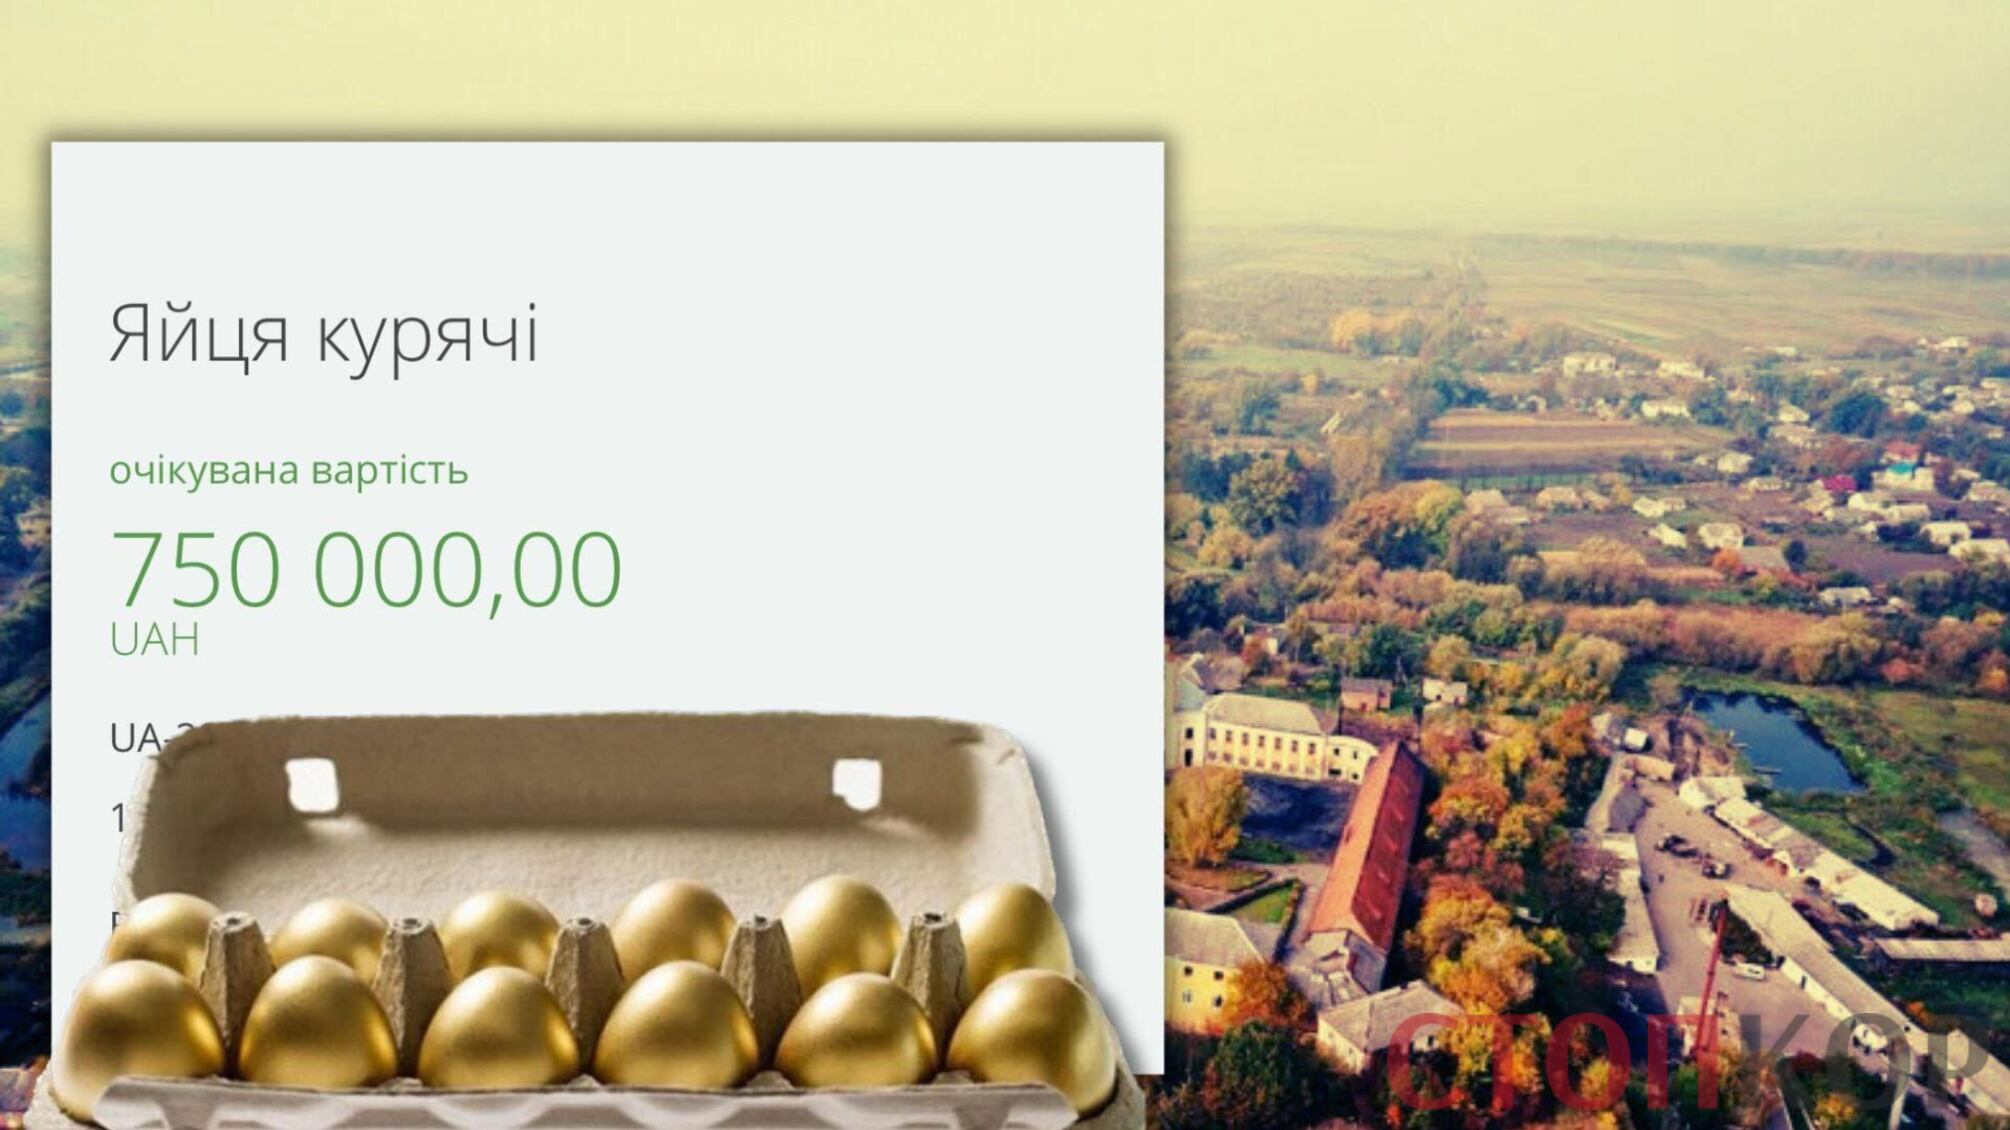 Переплюнули Минобороны: 'золотые' яйца по 50 грн за штуку планируют закупить на Волыни